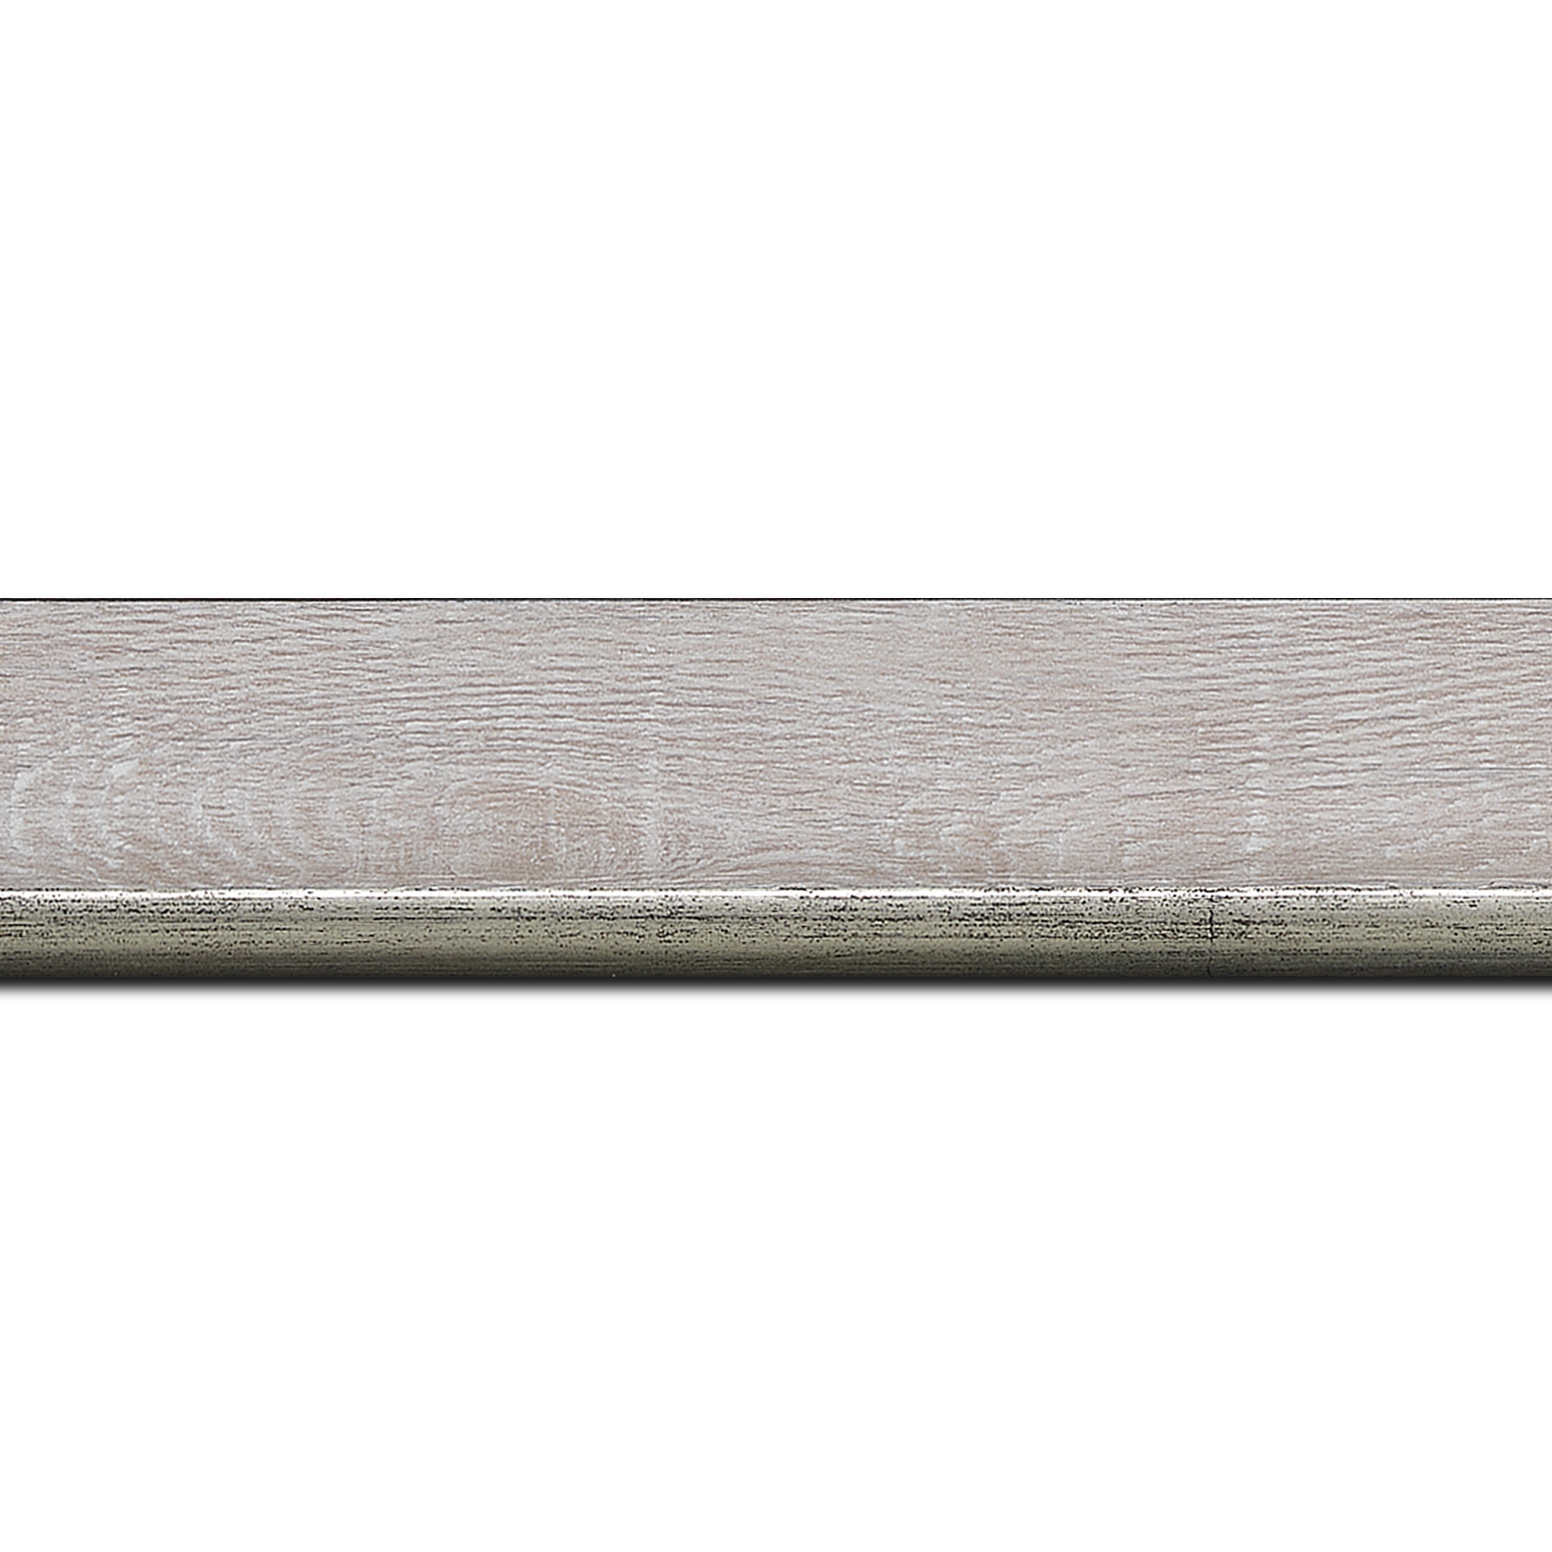 Pack par 12m, bois profil plat en pente largeur 3.5cm de couleur ton bois veiné teinté gris  filet argent chaud      (longueur baguette pouvant varier entre 2.40m et 3m selon arrivage des bois)